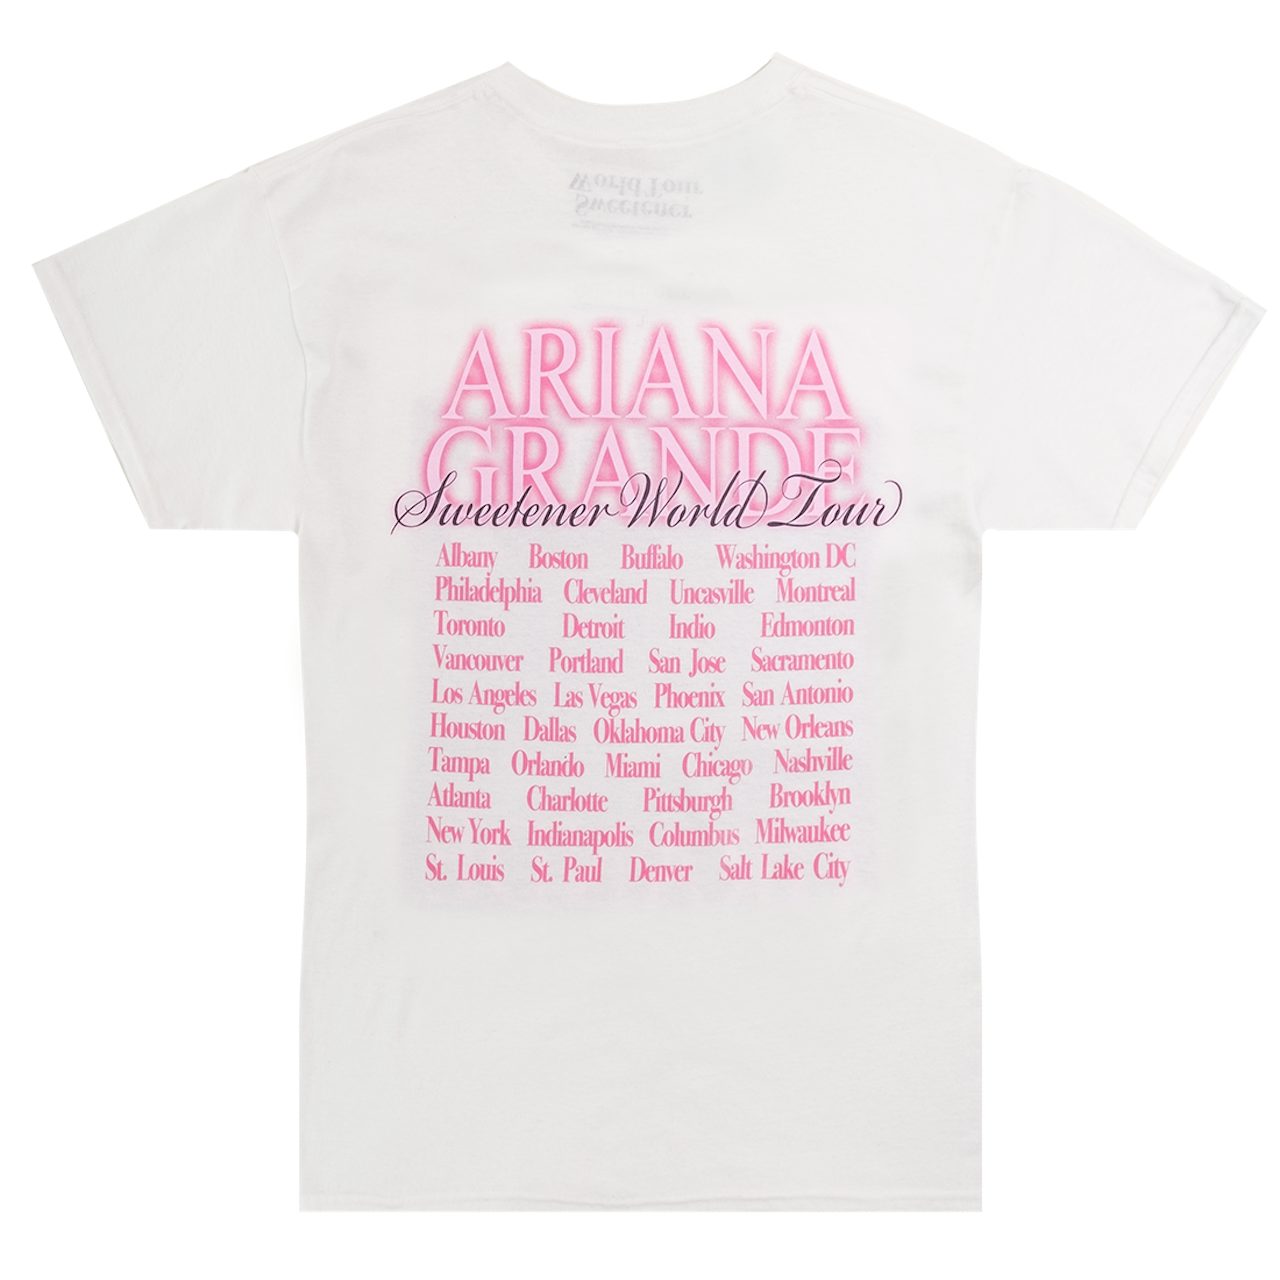 Ariana Grande Sweetener World Tour Homage T Shirt